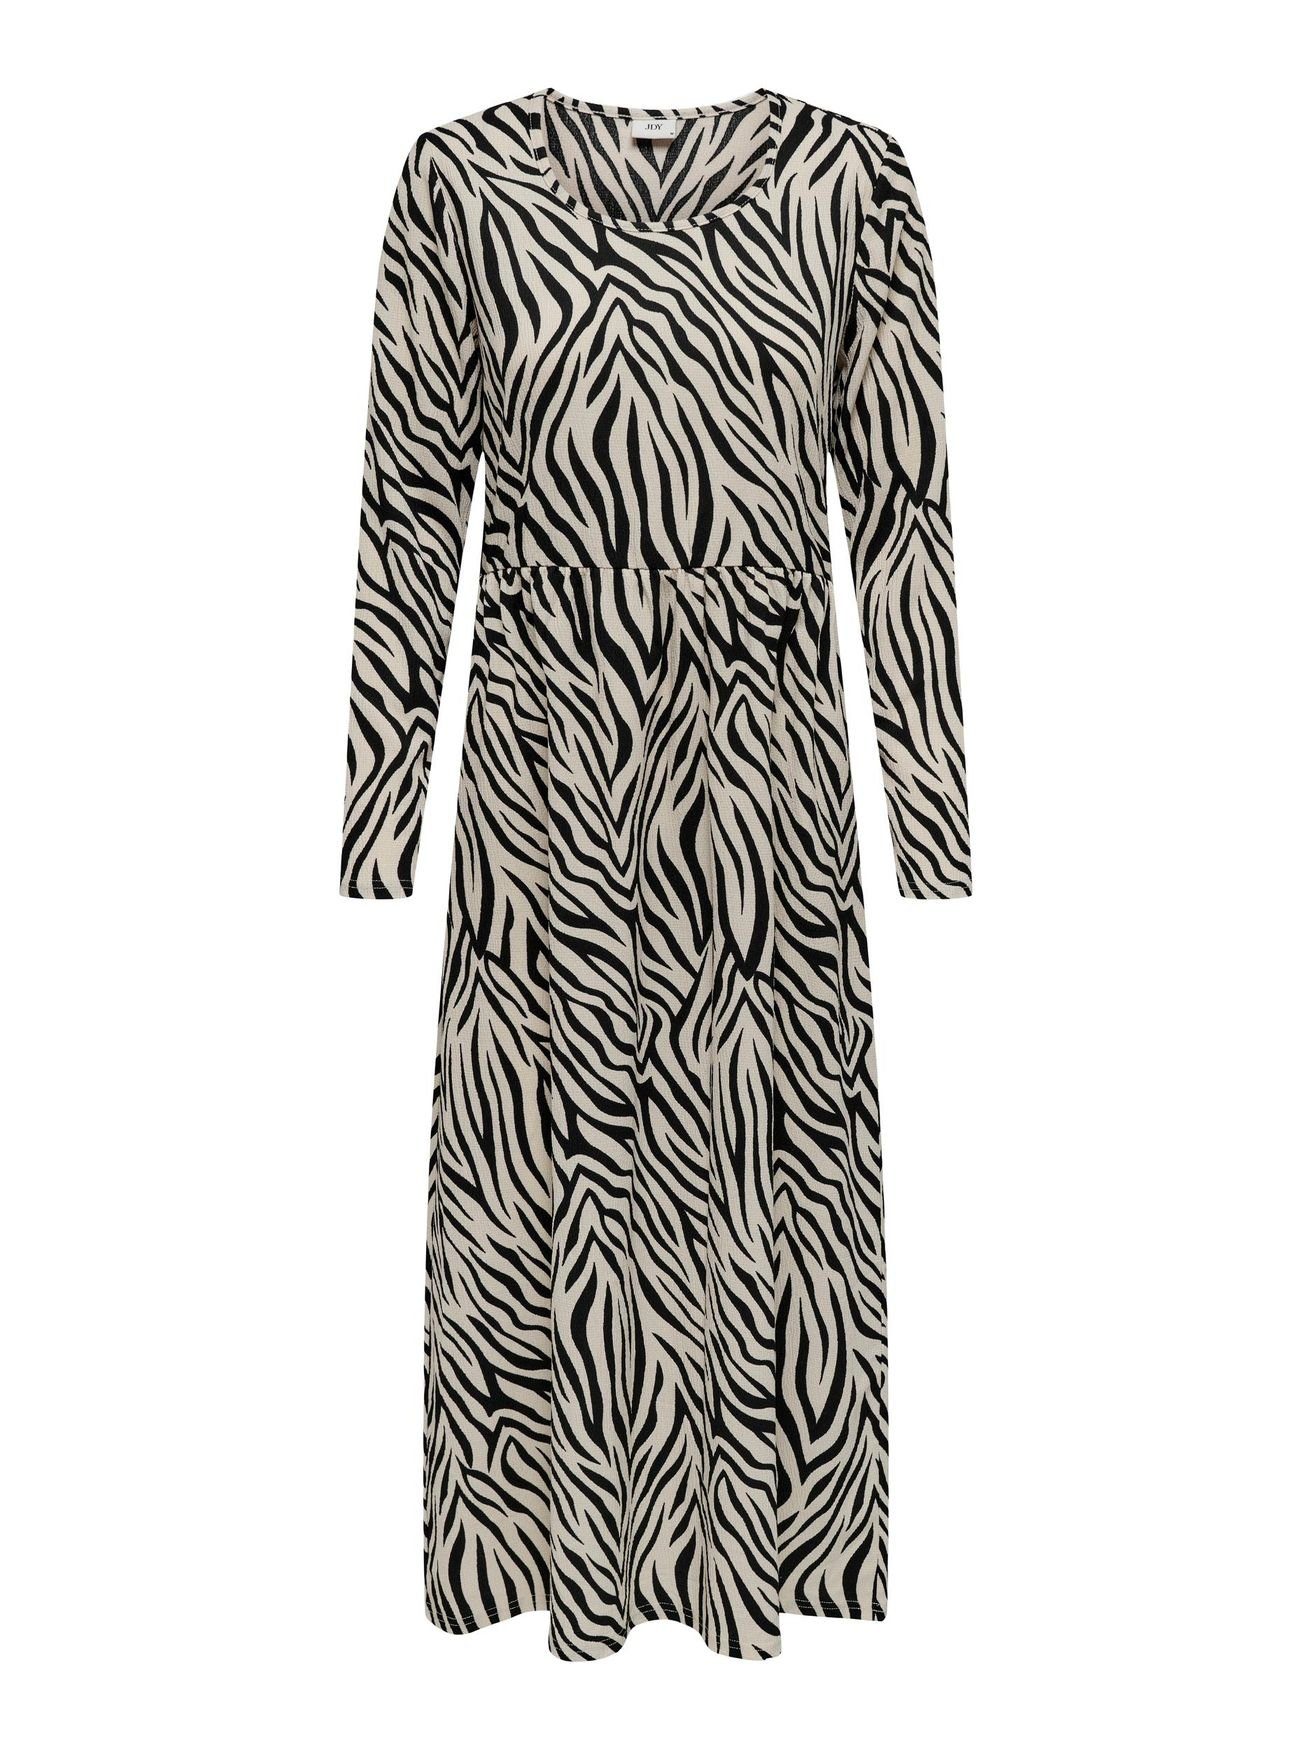 JACQUELINE de YONG Shirtkleid Langes Langarm Kleid Animal Print Midi Dress JDYLOTUS (lang) 5412 in Beige